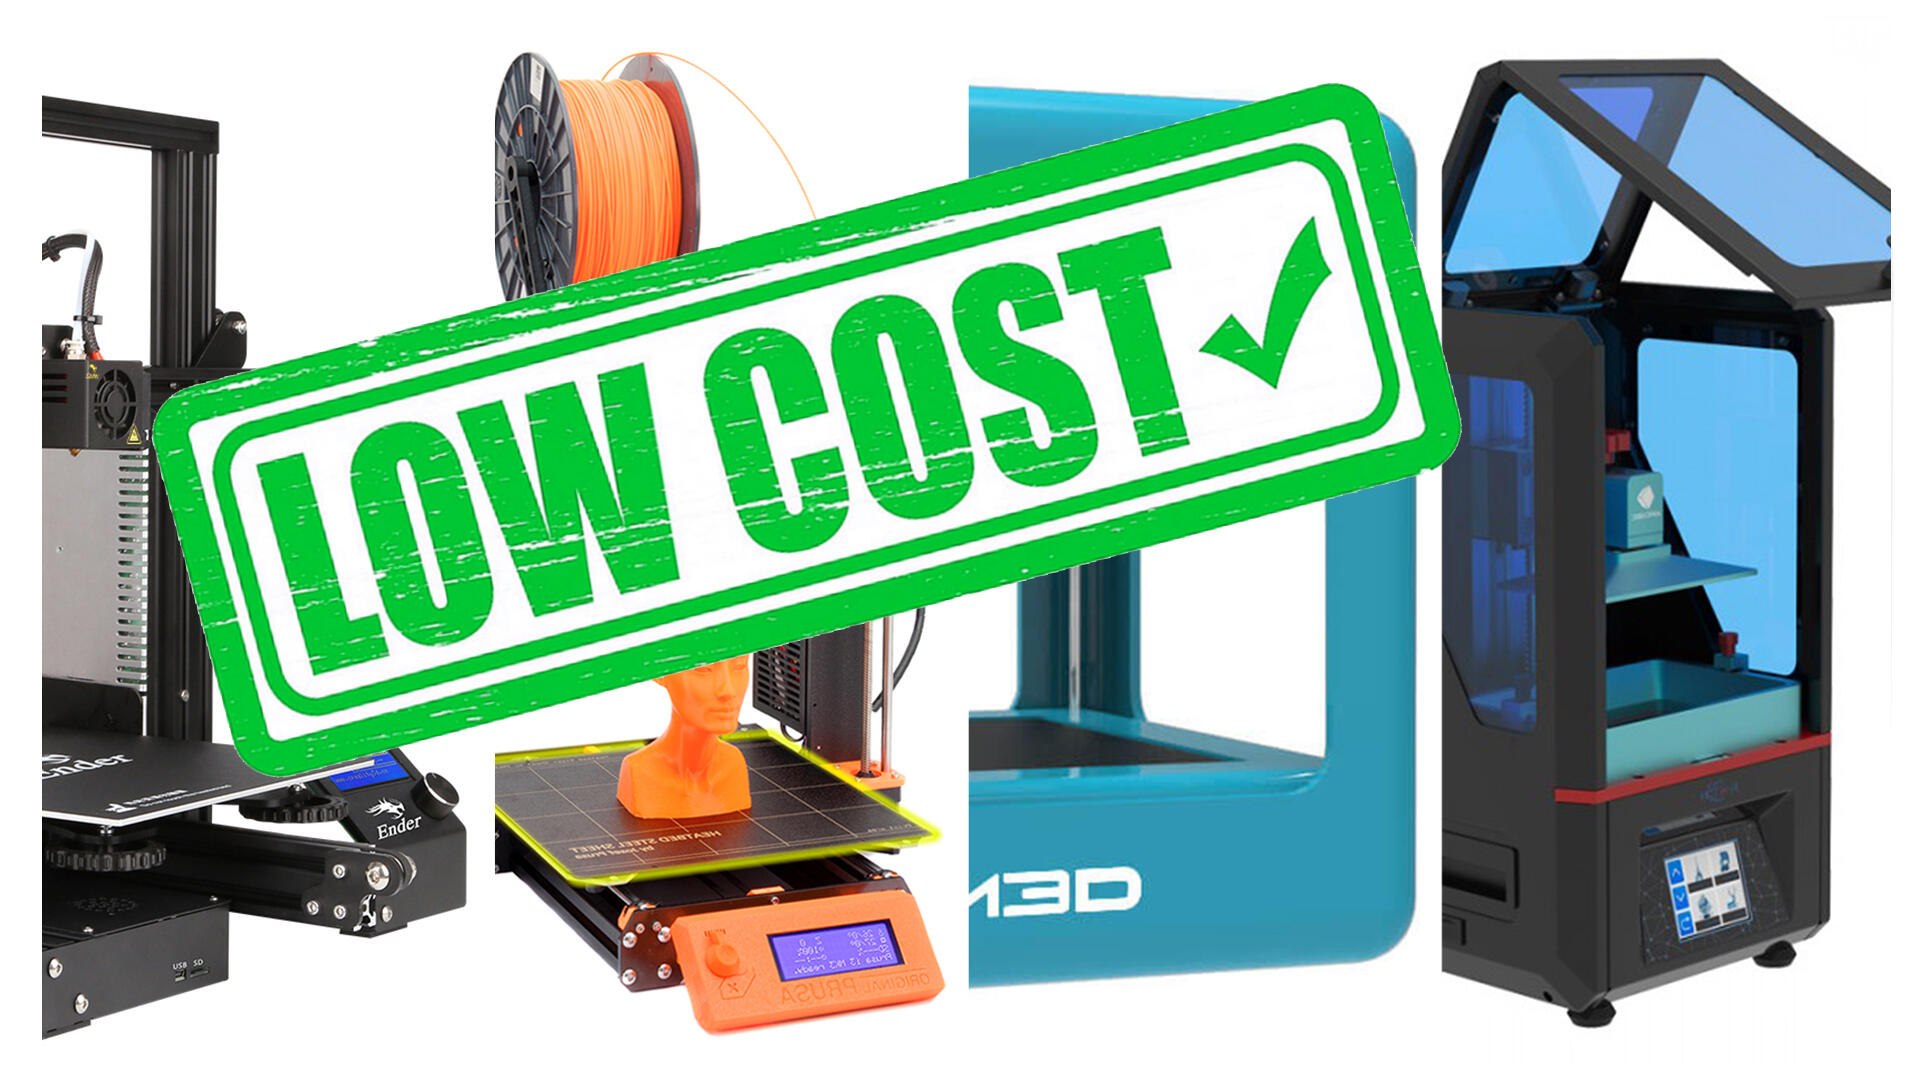 Stampante 3D economica ma di qualità: Anet A8 e TRONXY X3 sono in offerta  speciale